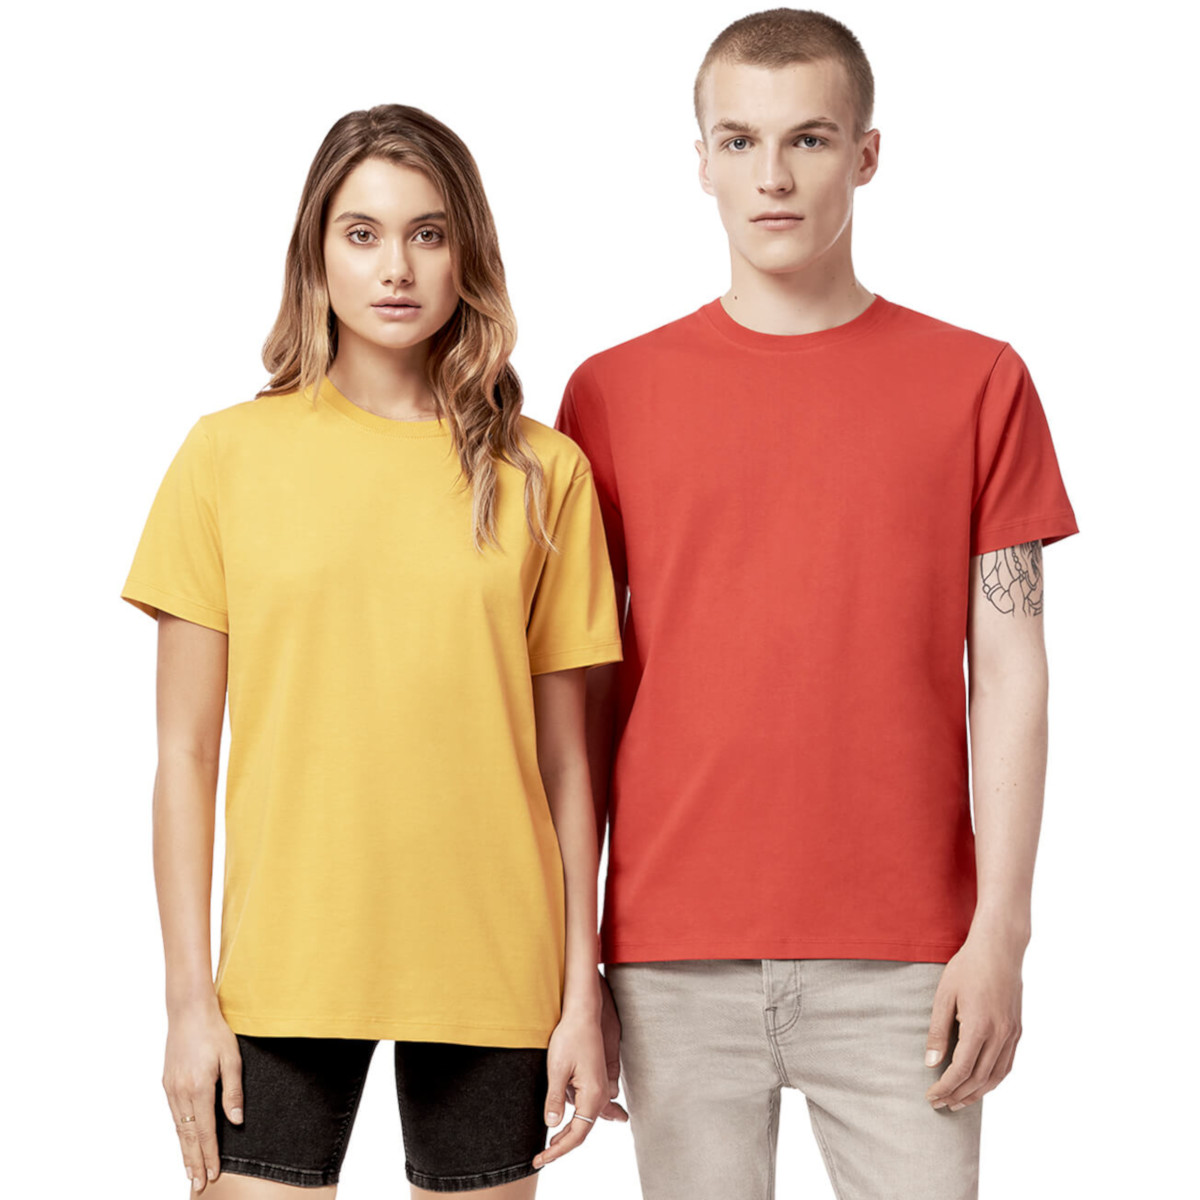 T-shirt unisex manica corta Colori Caldi in cotone biologico